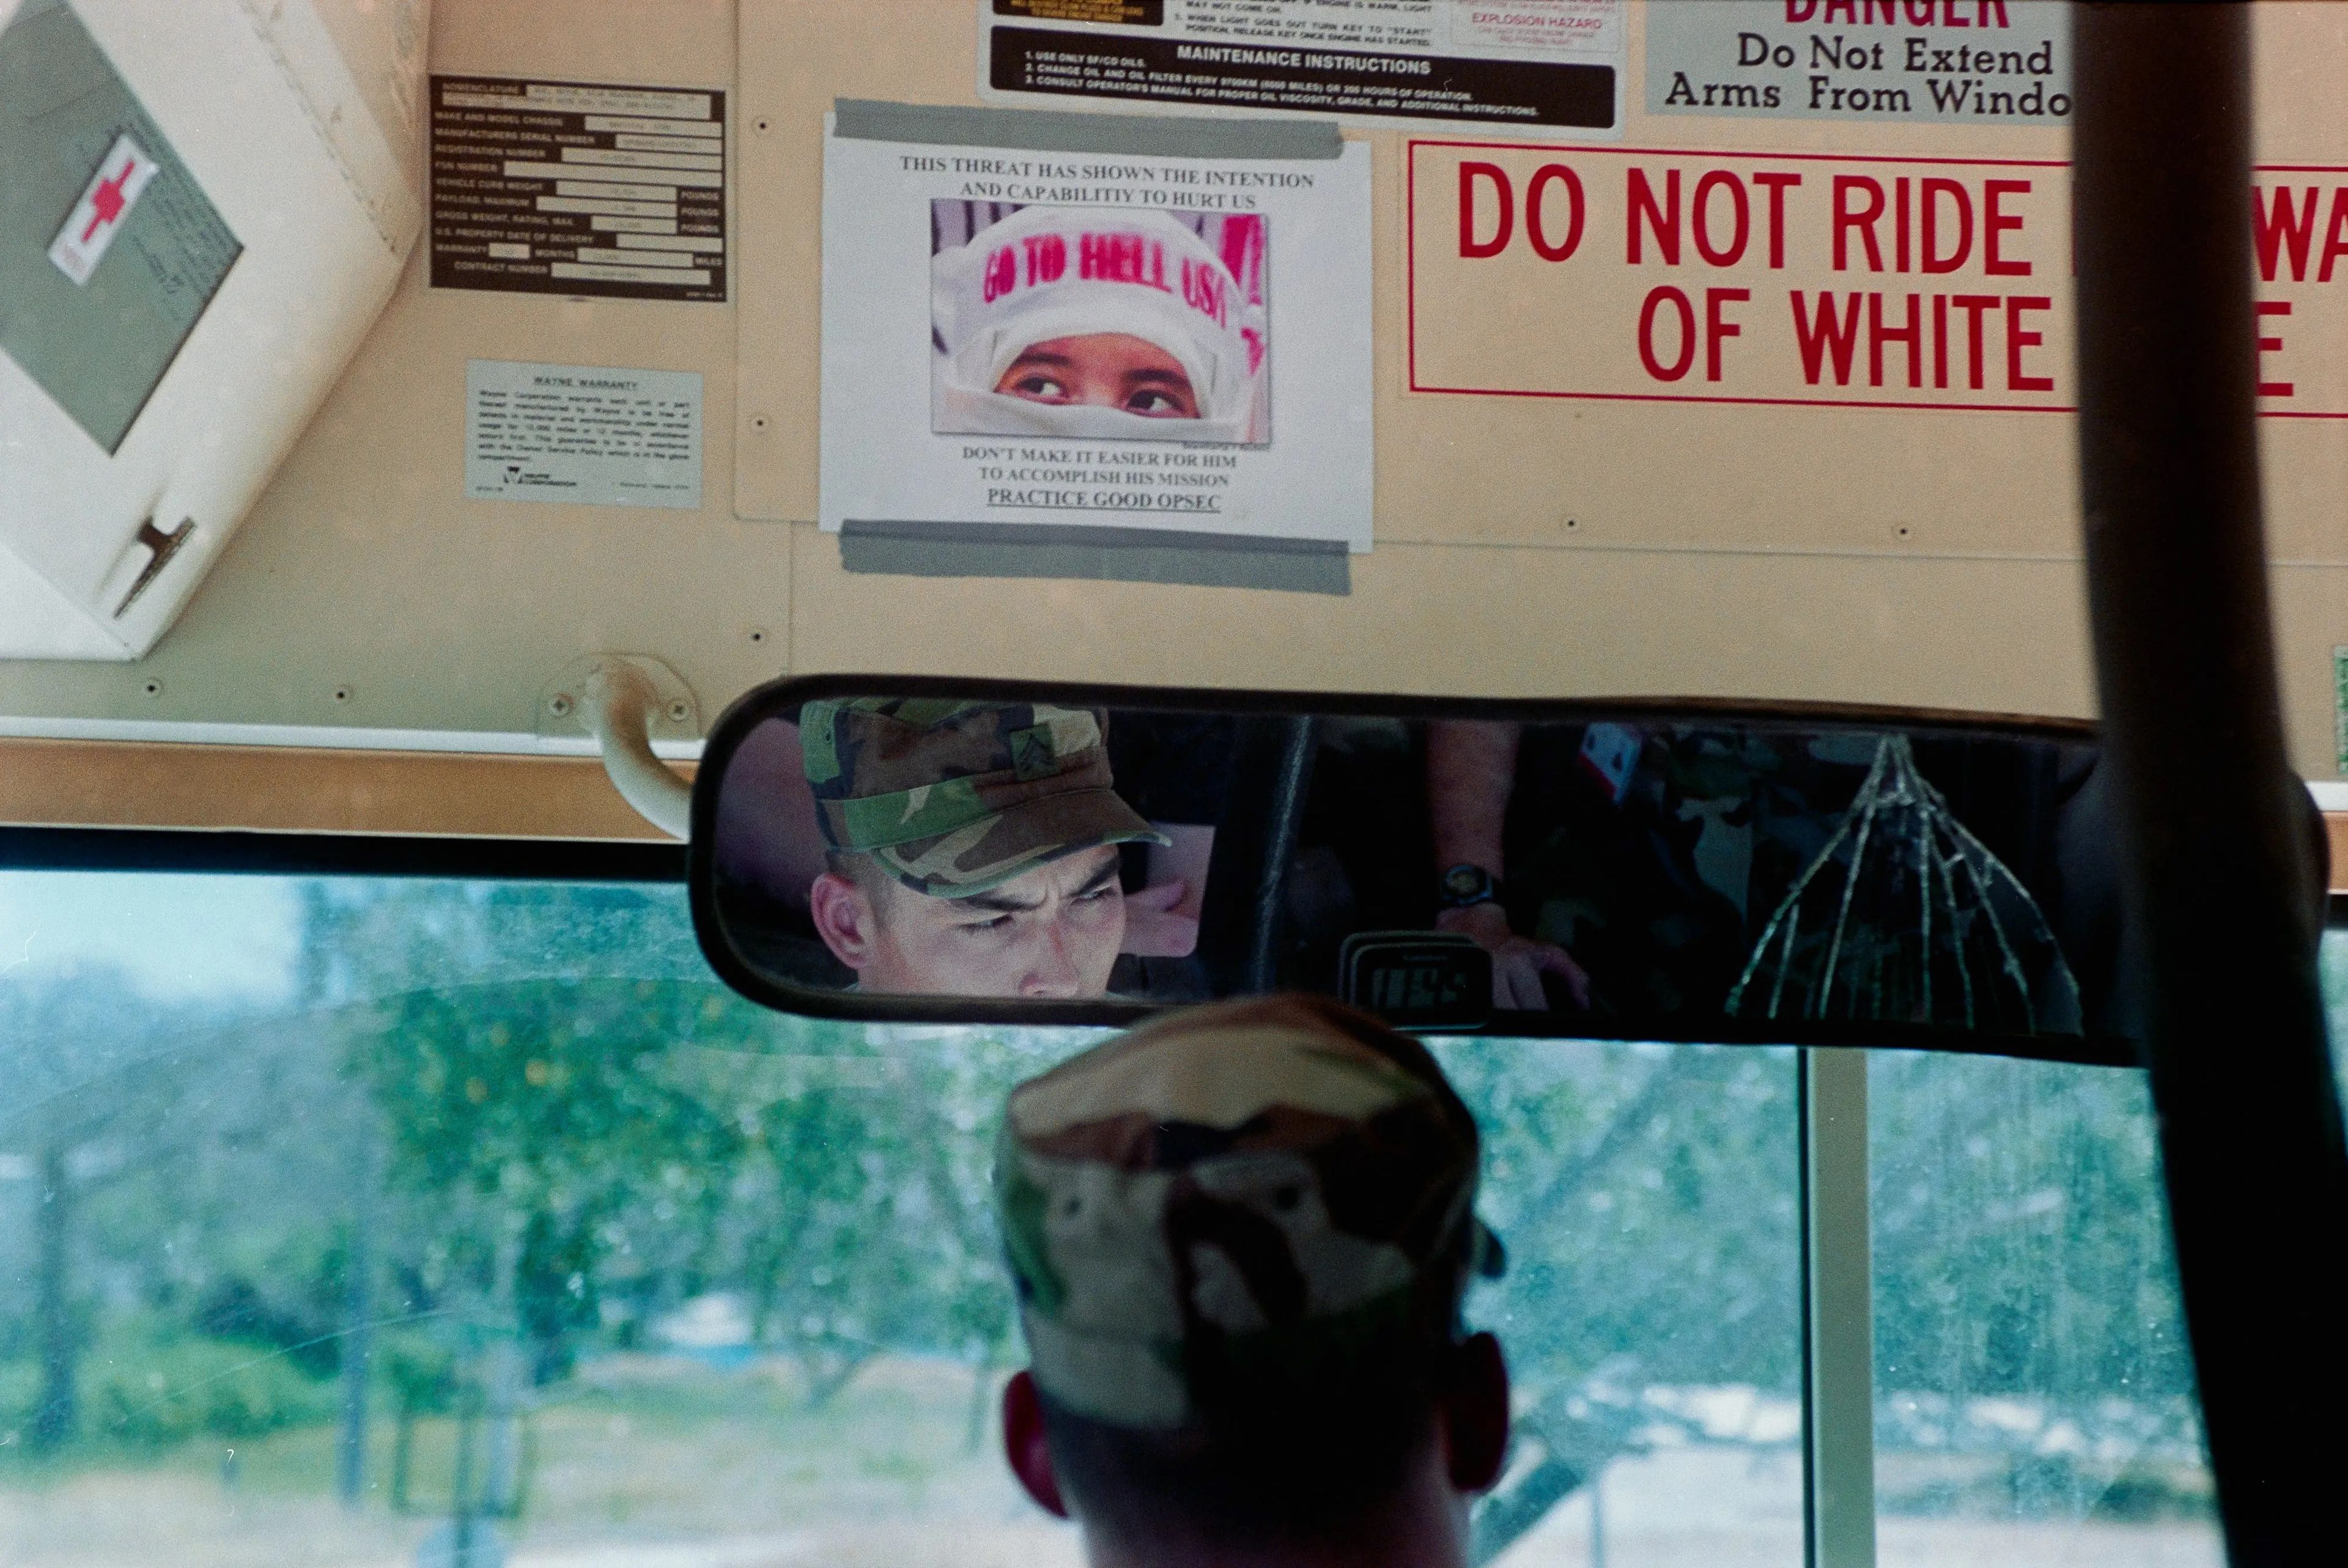 Un autobús conducido por marines con un cartel en el que aparece la foto de una persona con pañuelo en la cabeza que dice "GO TO HELL USA". El texto alrededor de la foto dice: "Esta amenaza ha demostrado la capacidad y la intención de hacernos daño".